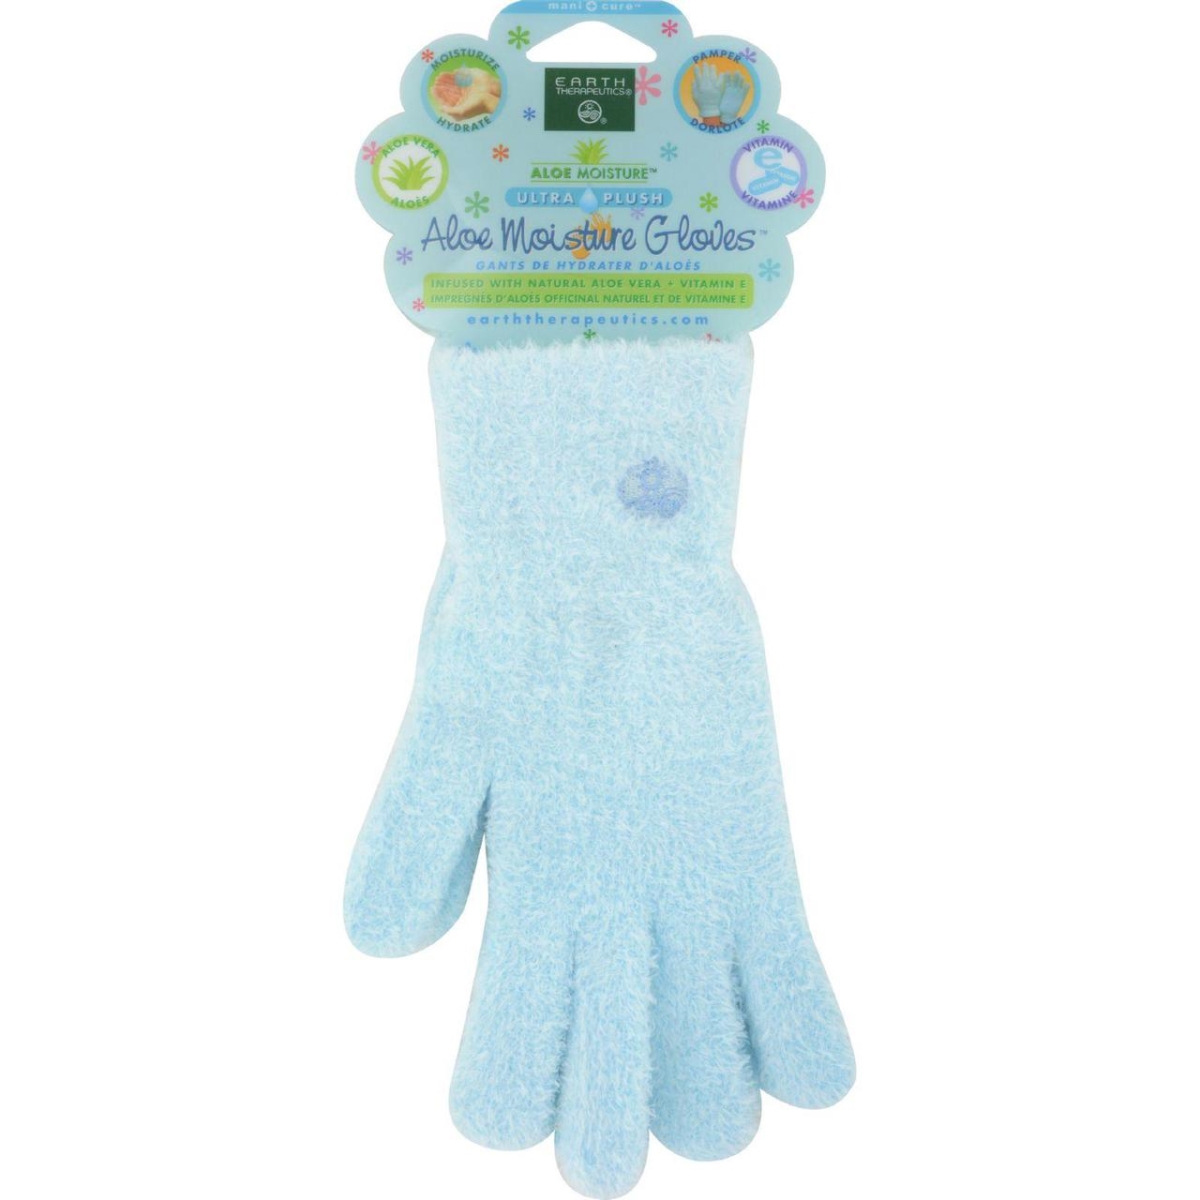 Hg0657247 Aloe Moisture Gloves, Blue